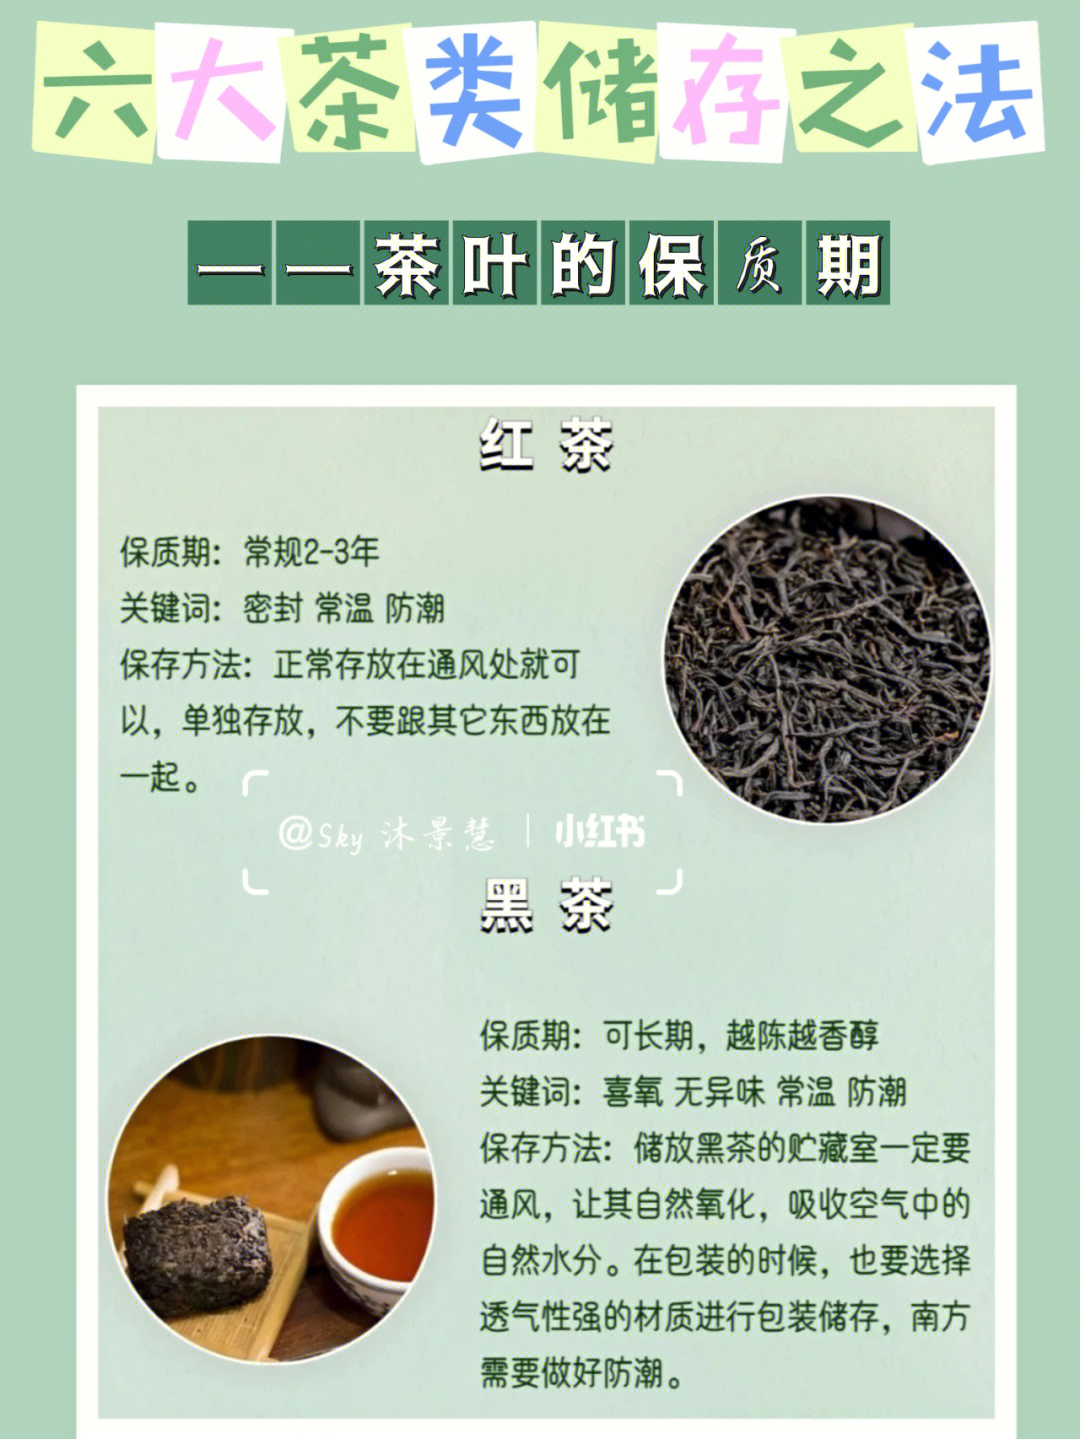 六大茶类储存之法茶叶的保质期